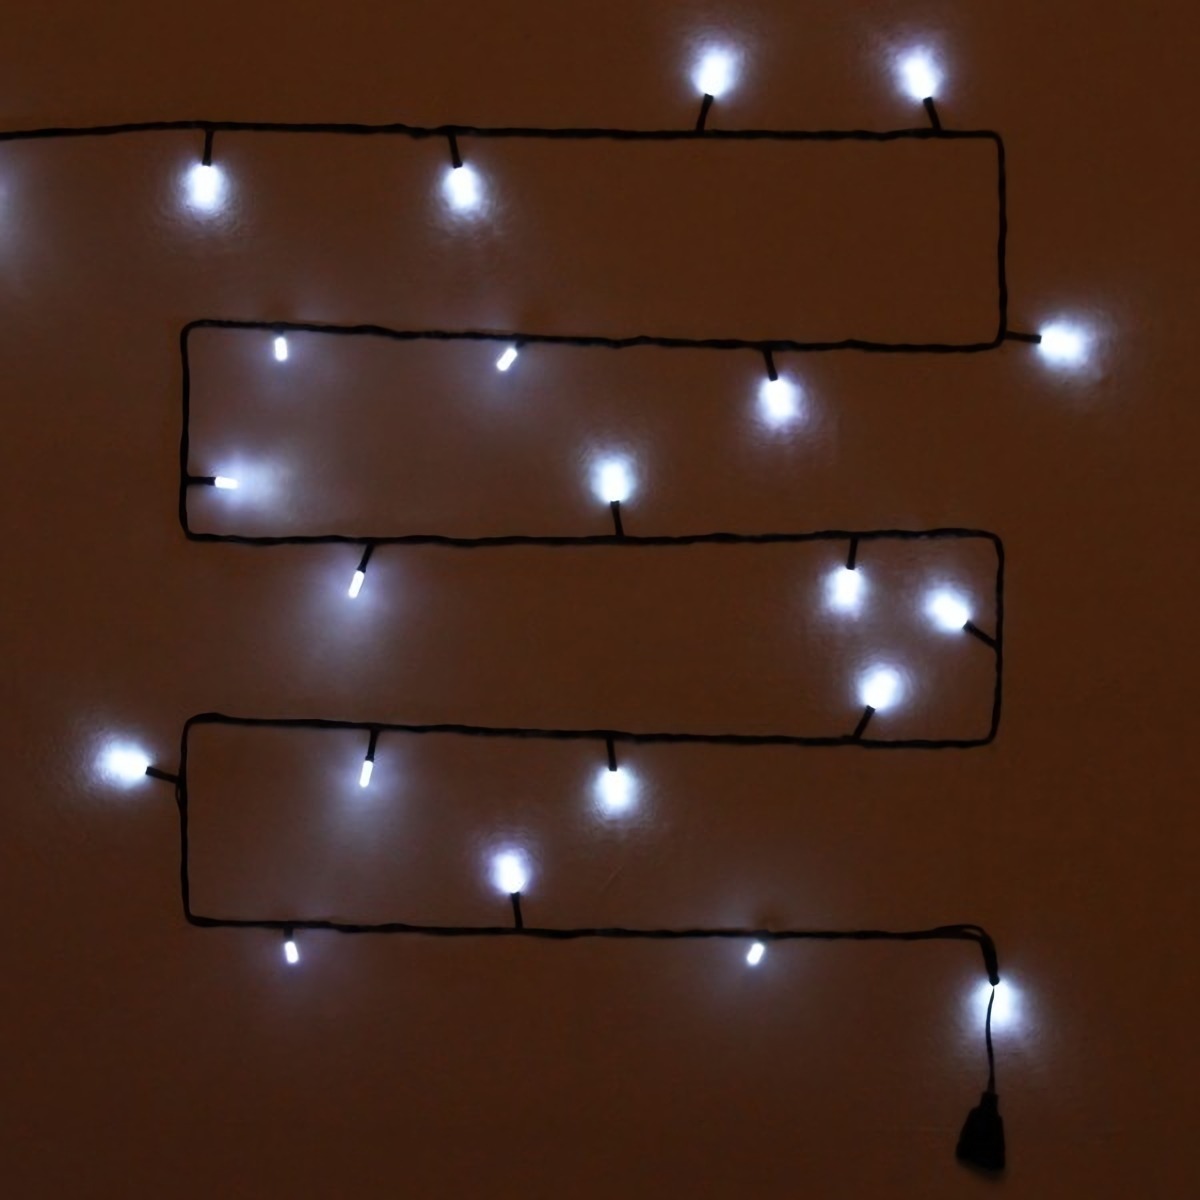 Гирлянда Серпантин Кристаллы светодиодная нить, ламп: 36шт., 5м, режимов: 8, от сети, белый (00002886)